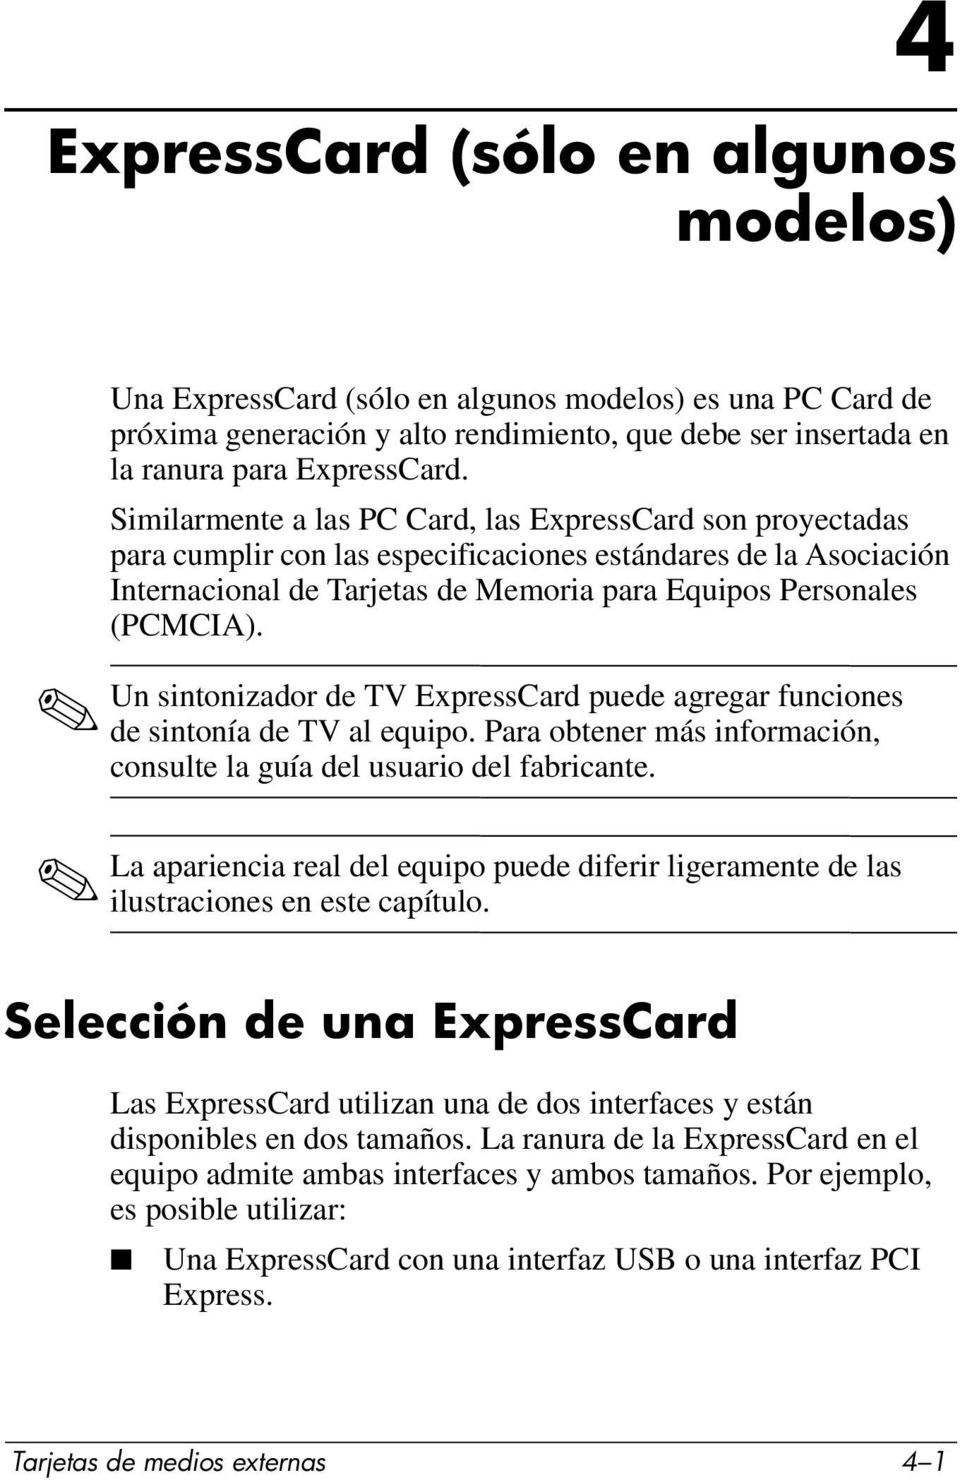 Un sintonizador de TV ExpressCard puede agregar funciones de sintonía de TV al equipo. Para obtener más información, consulte la guía del usuario del fabricante.